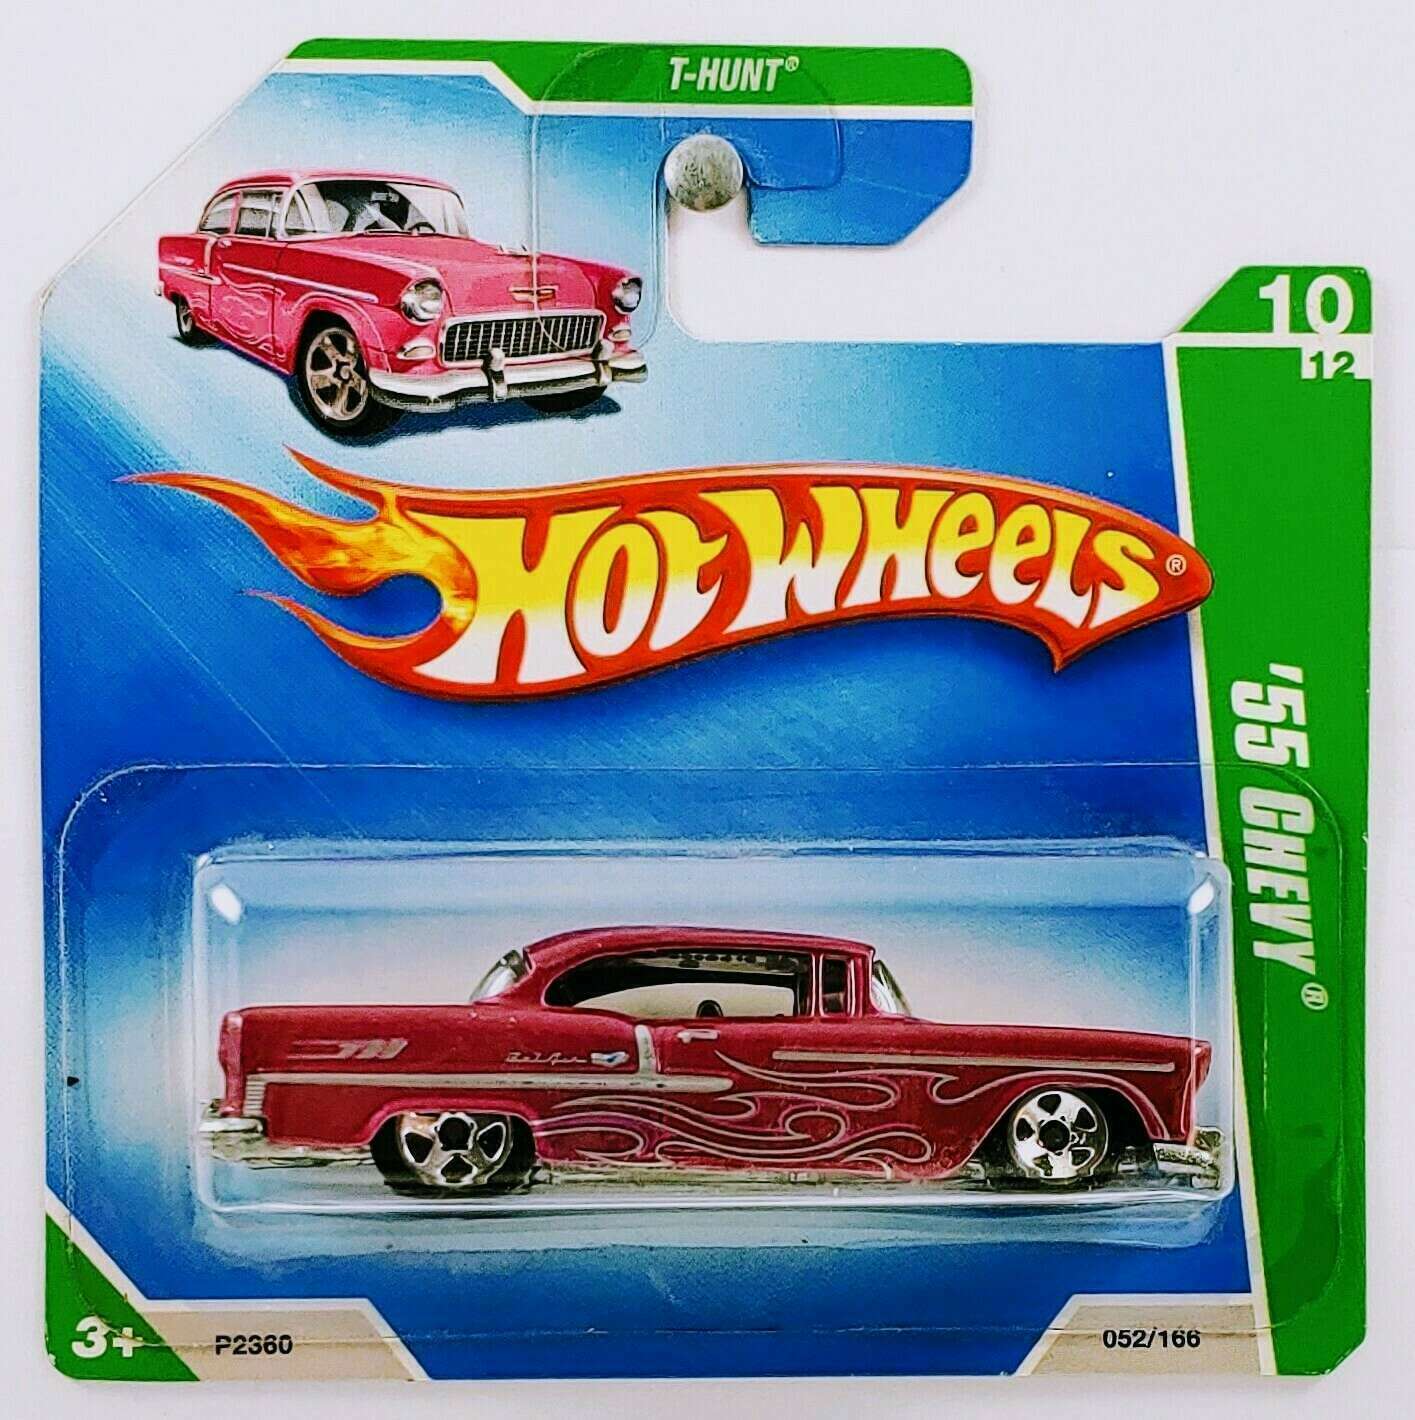 Hot Wheels 2009 - Collector # 052/172 - T-Hunt 10/12 - '55 Chevy - Metallic Magenta - SC